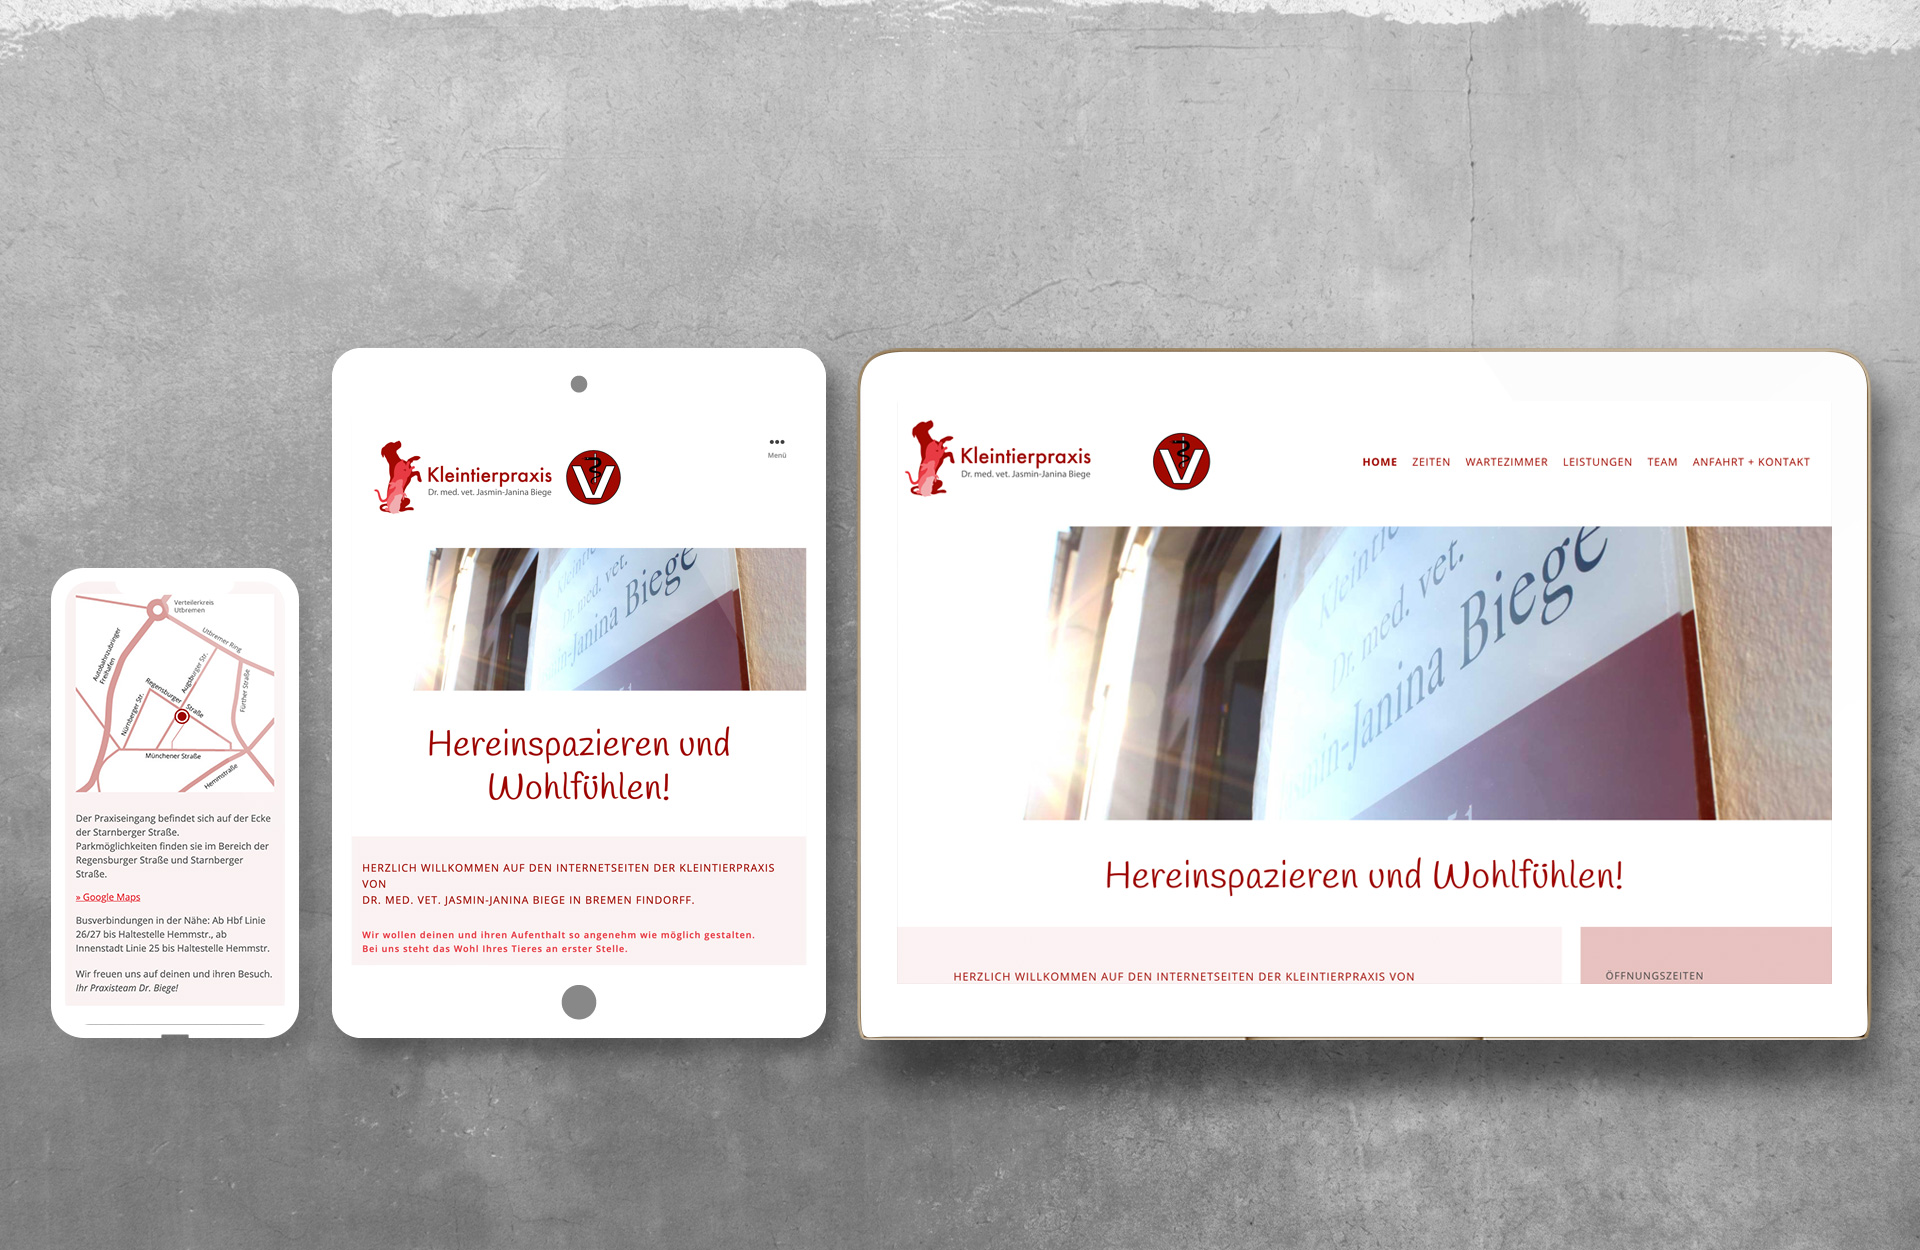 Tierarzt Bremen - Responsive Webdesign